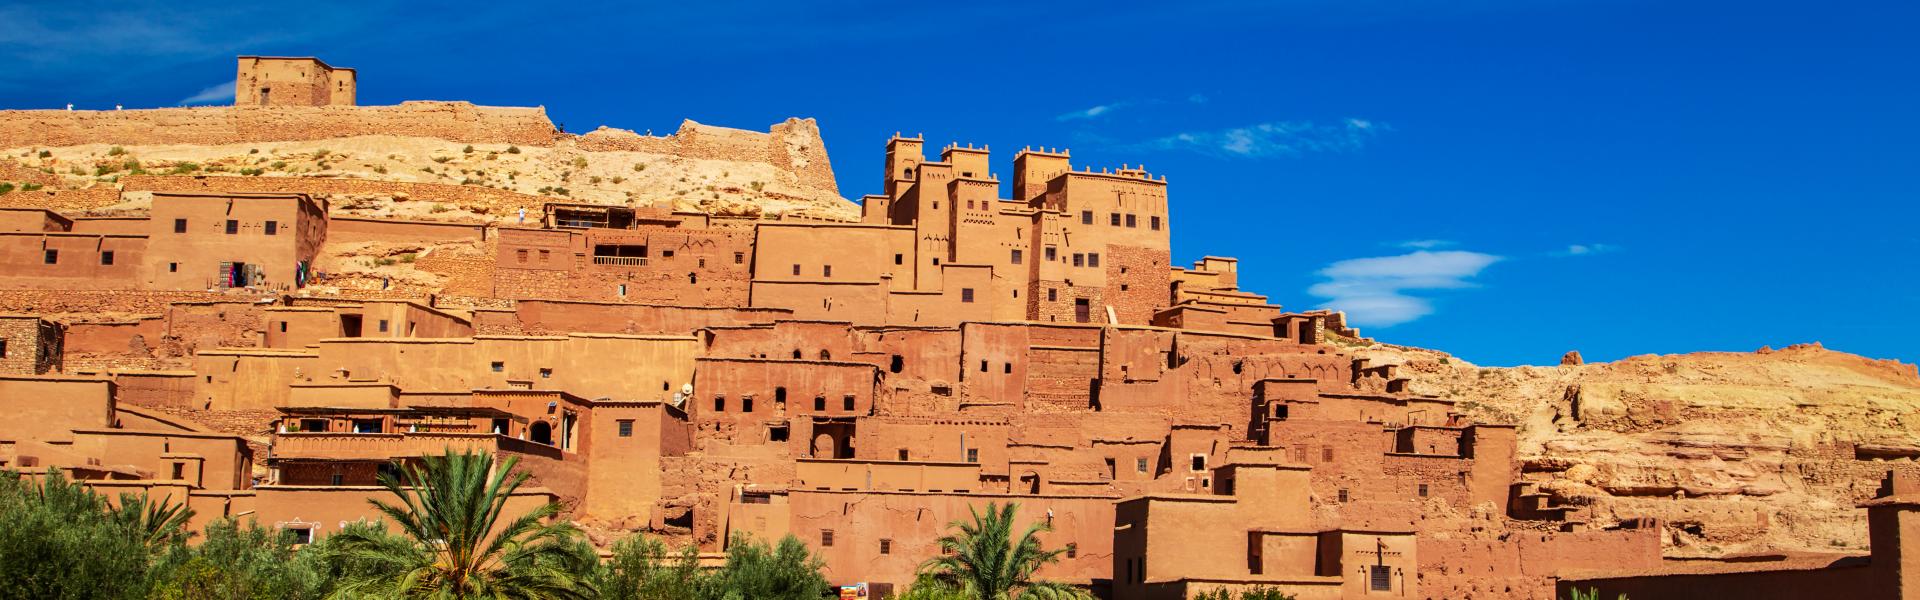 Ontdek de prachtige omgeving van Marokko in een vakantiehuis Souss-Massa-Daraa - Casamundo